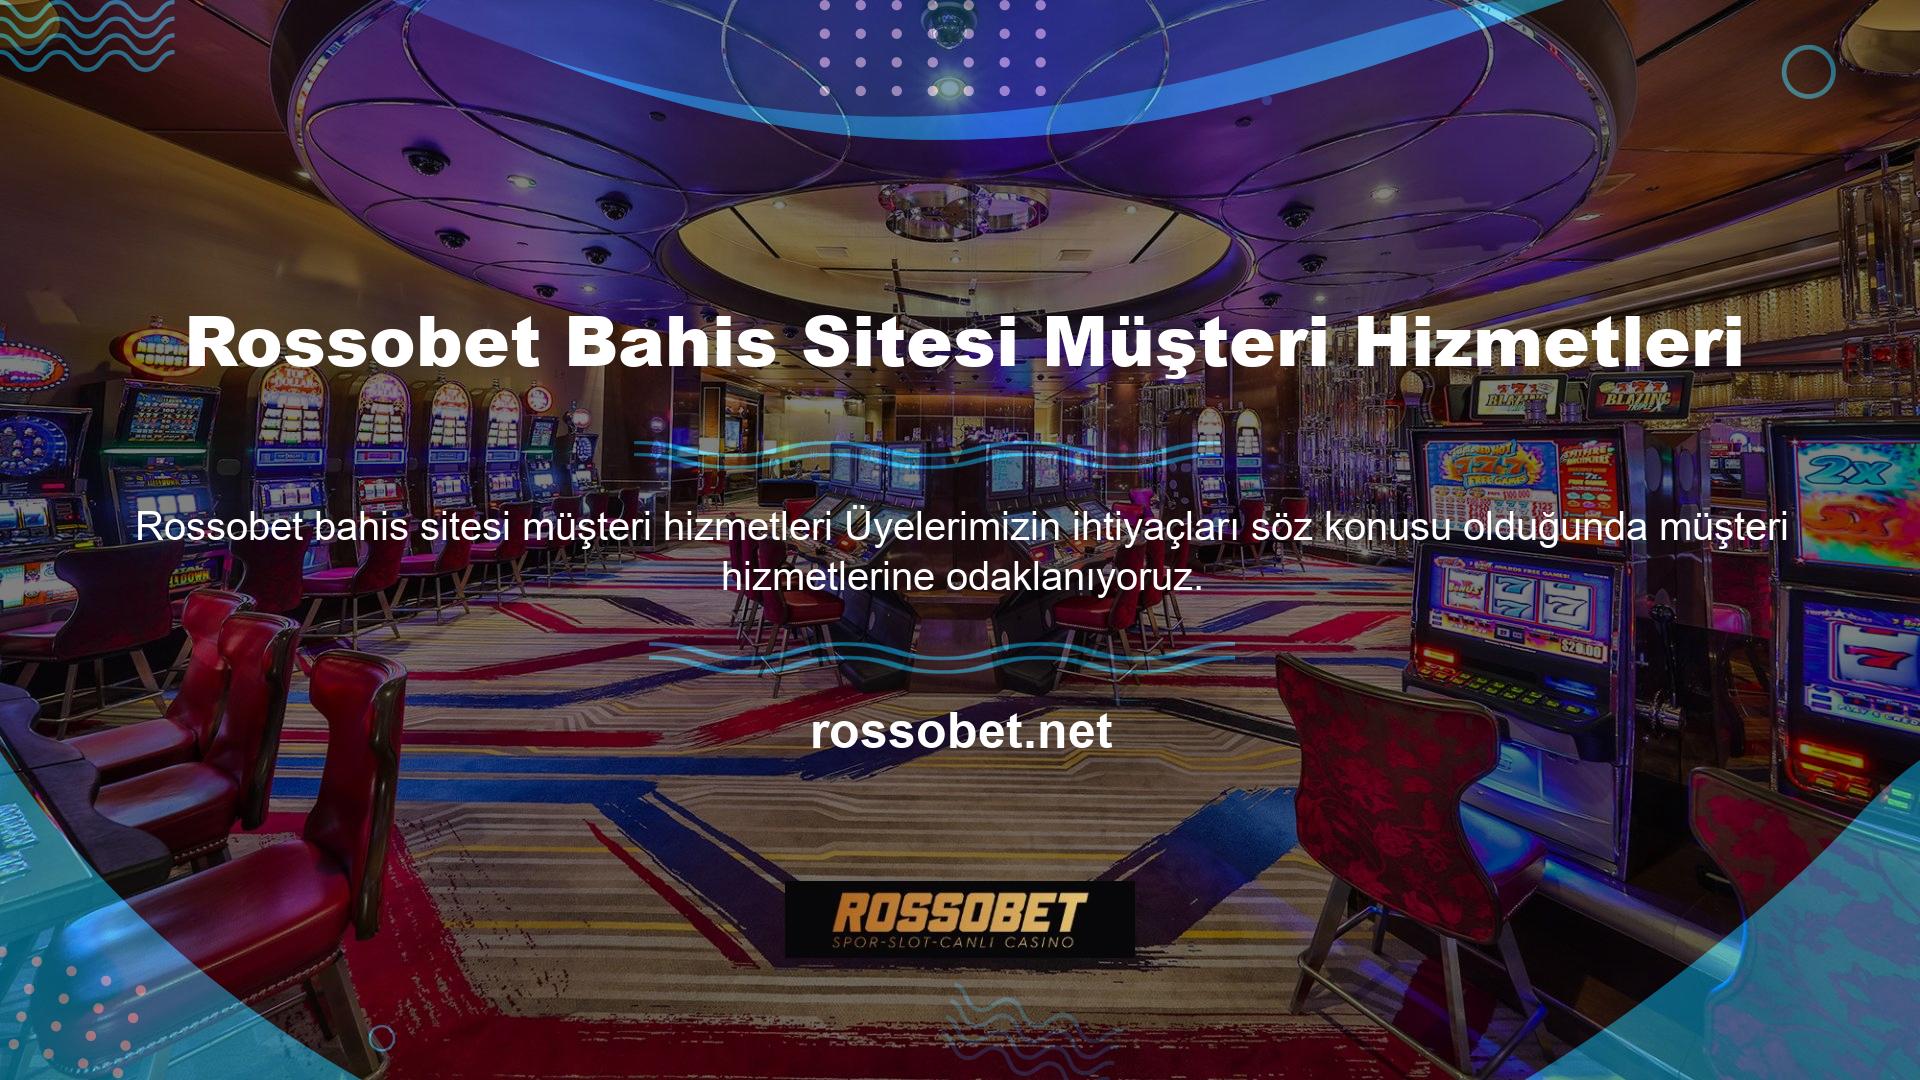 Rossobet bahis sitesi aktif canlı destek hattı ile müşterilerini memnun etmiştir